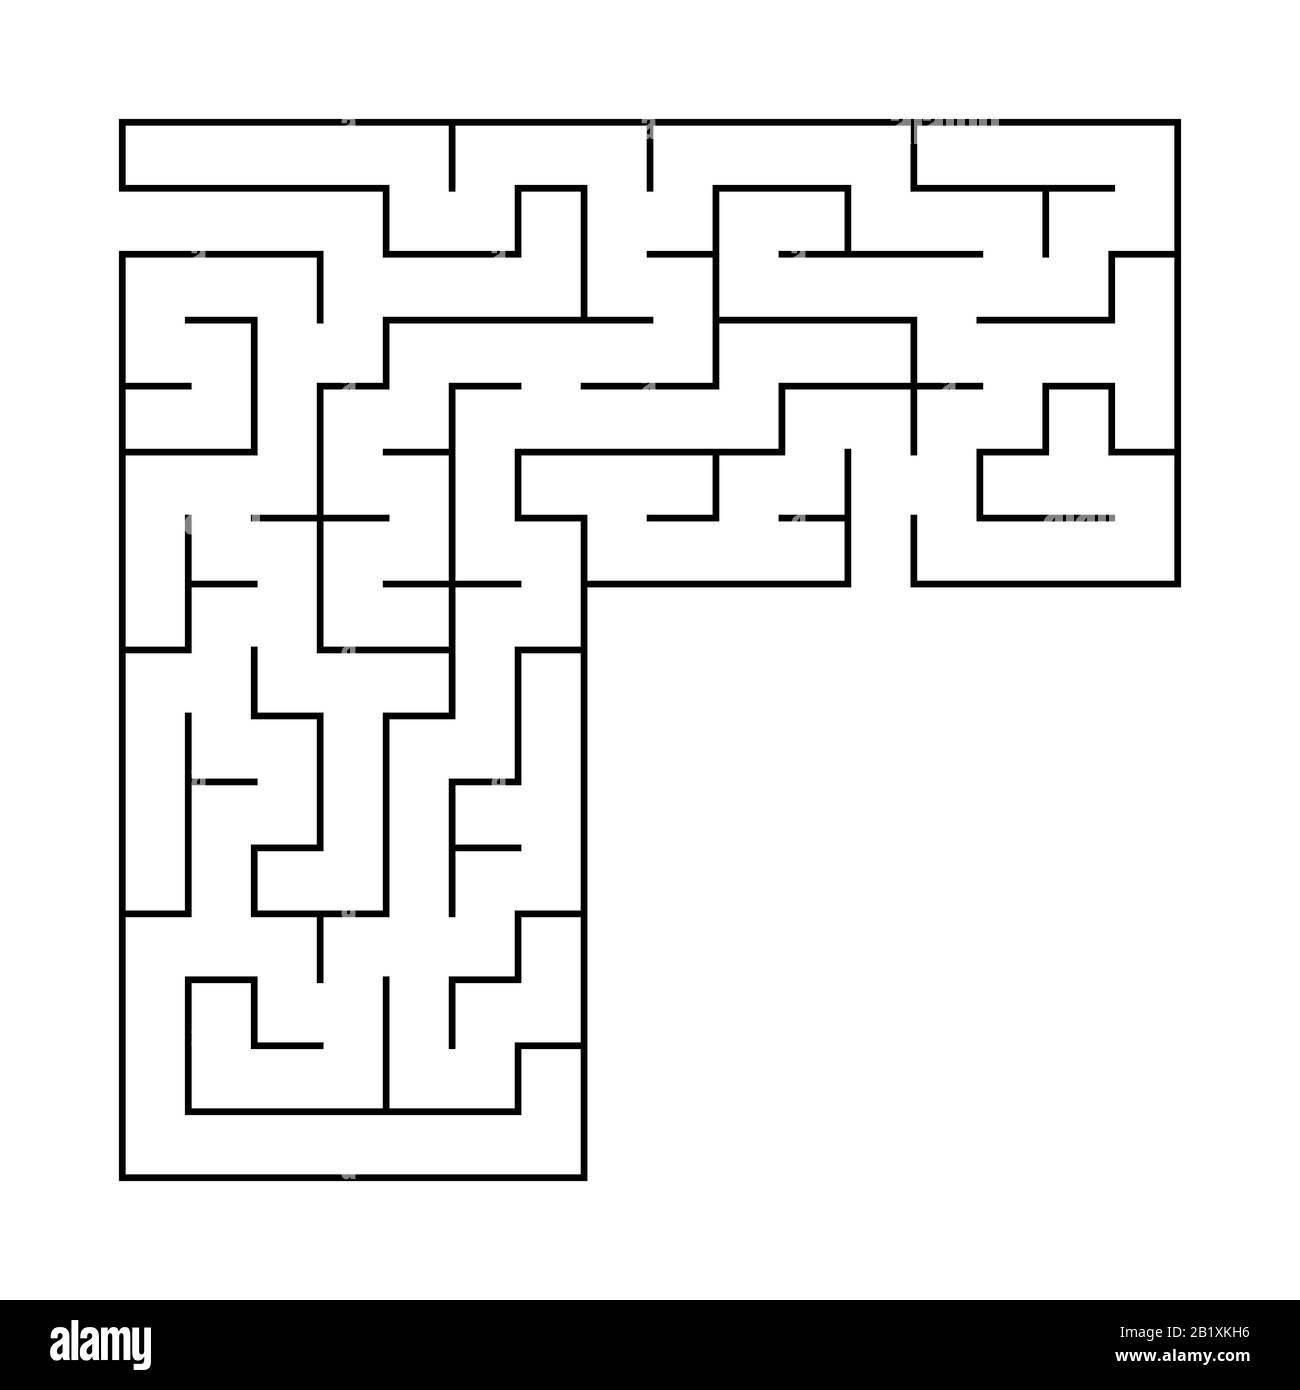 Labirinto quadrato astratto con ingresso e uscita. Un gioco interessante e utile per i bambini. Semplice immagine vettoriale piatta isolata su sfondo bianco Illustrazione Vettoriale